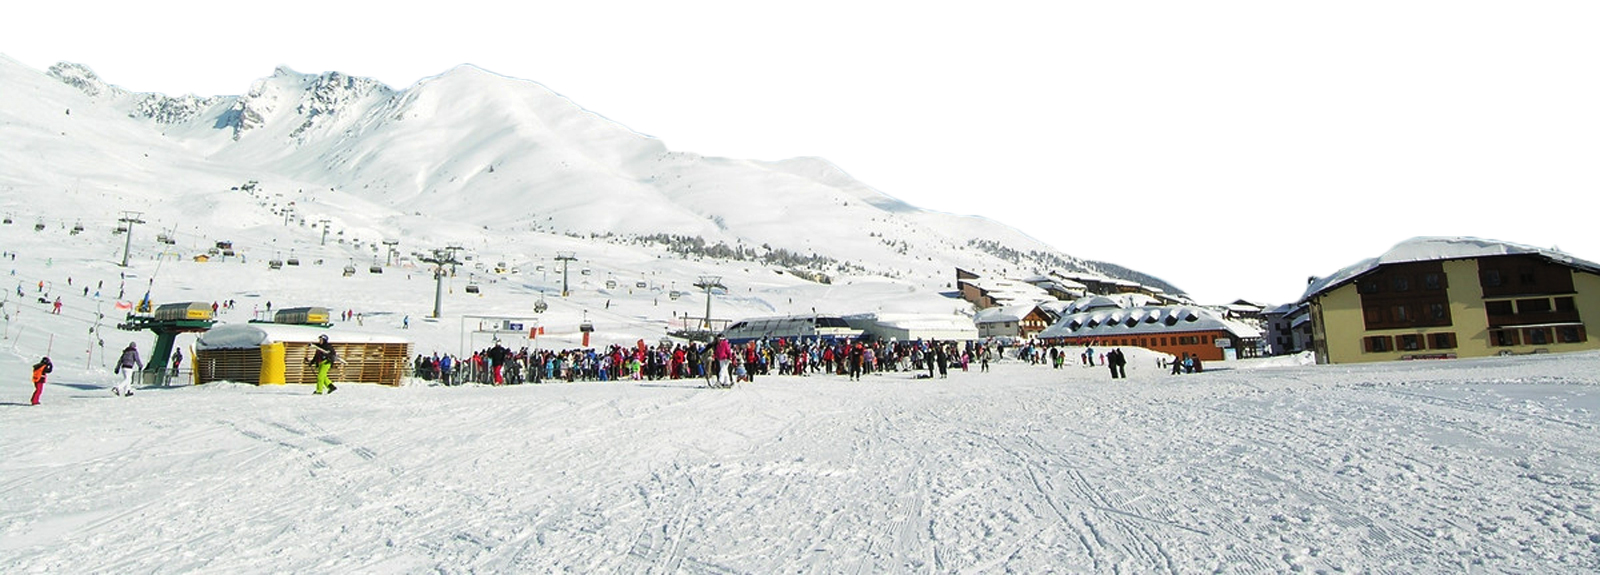 Iran skiing